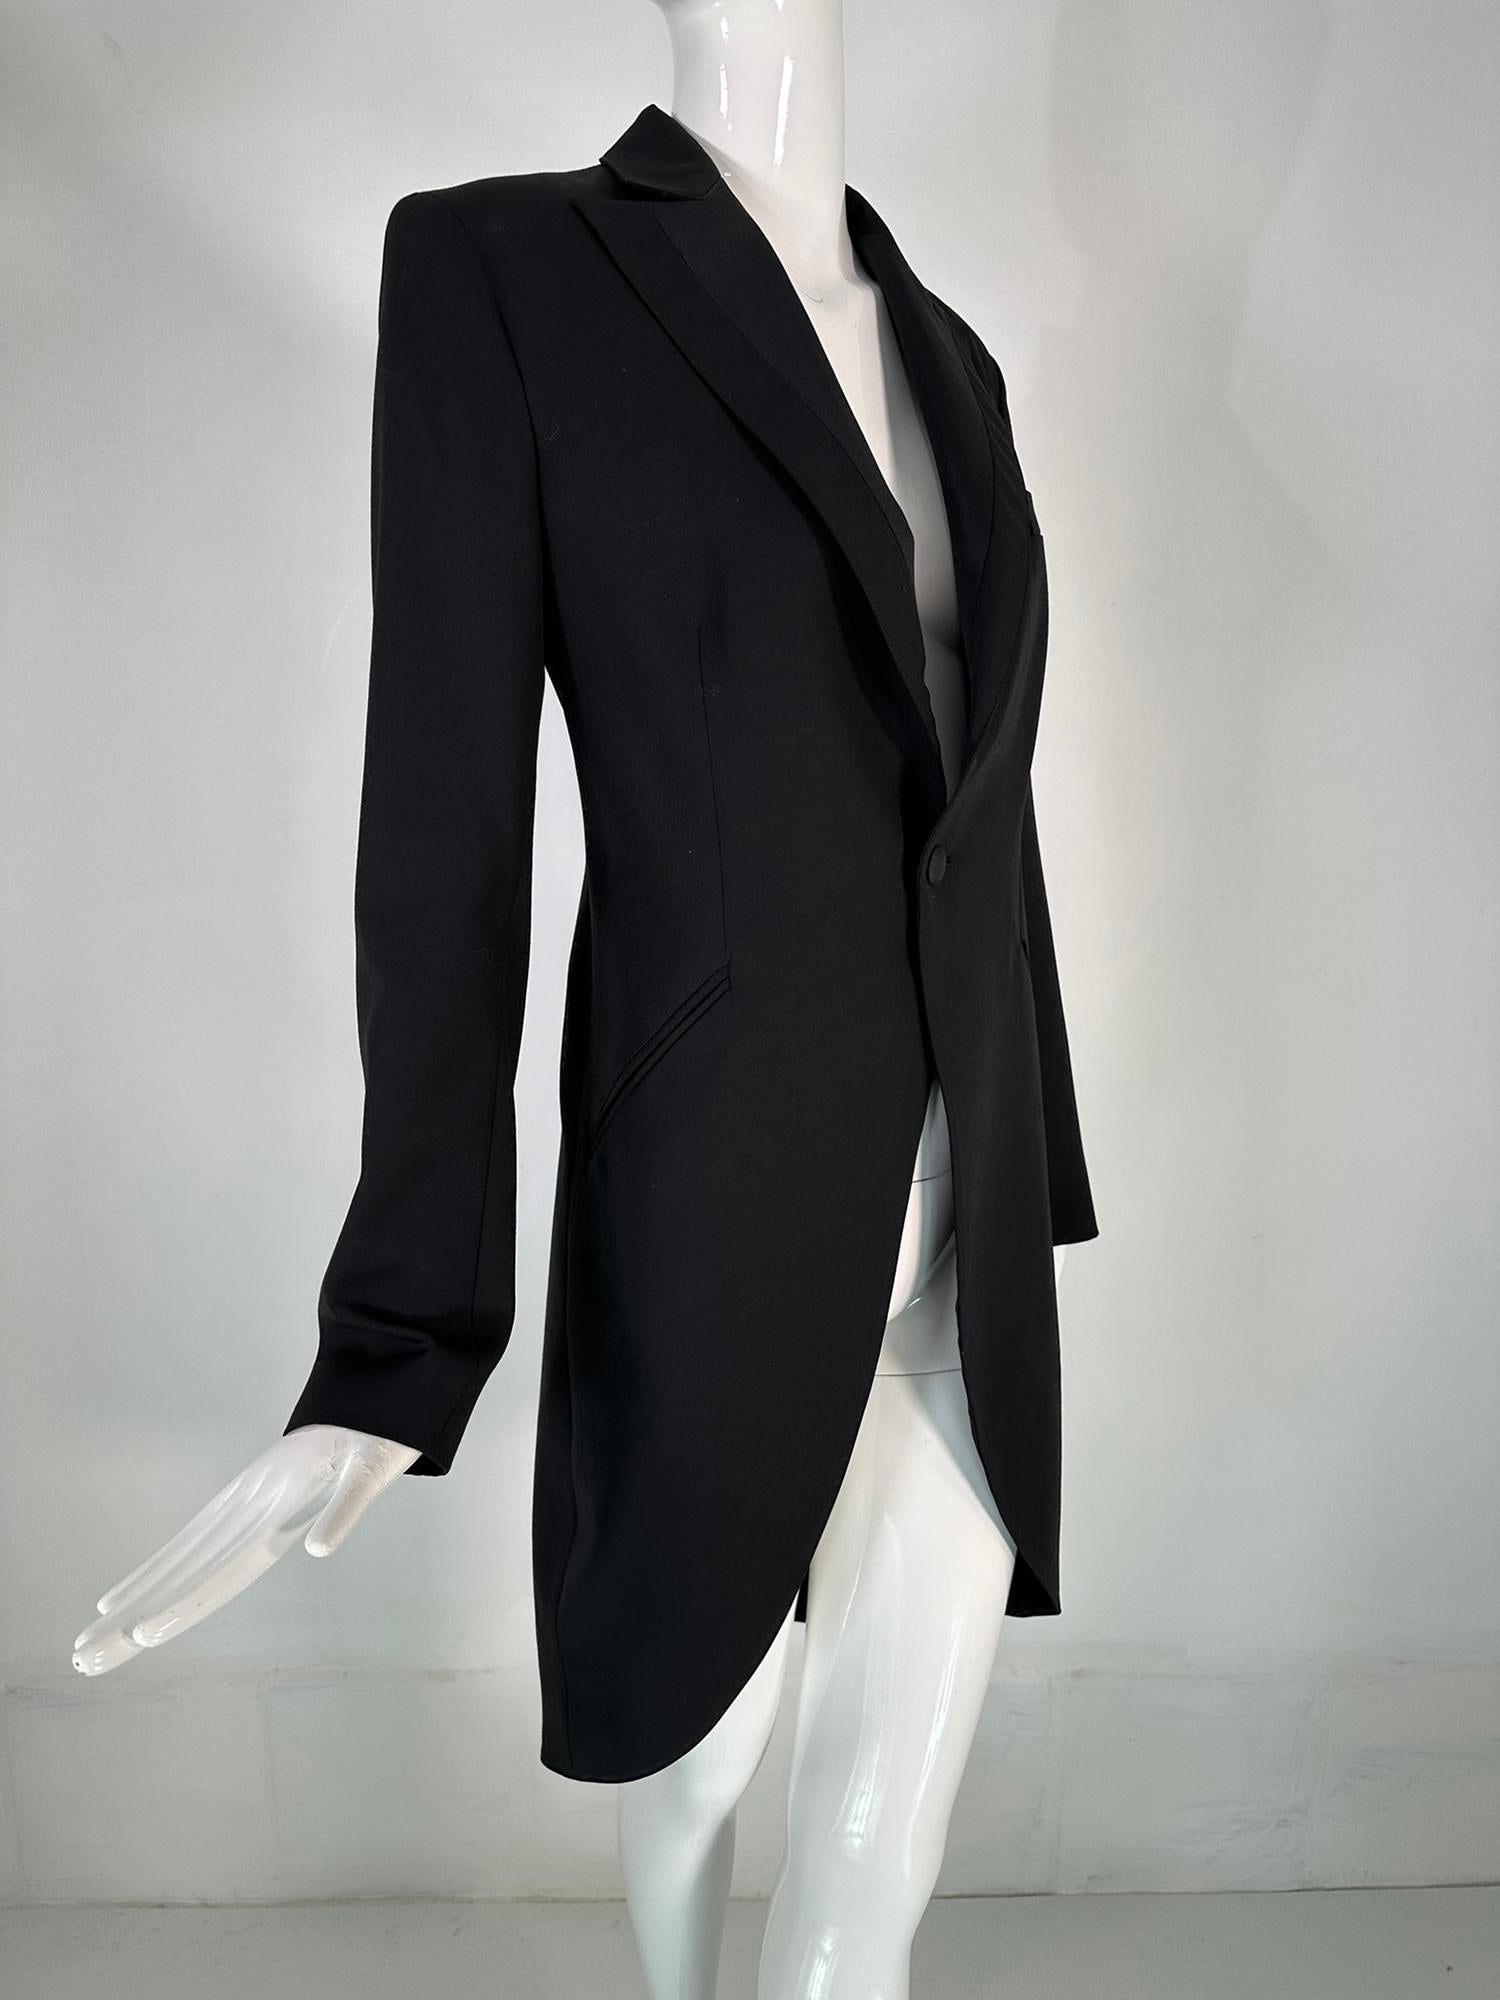 Manteau du soir de Ralph Lauren pour femme, 100% laine fine noire, entièrement doublé en 100% soie, marqué taille 8. Ce magnifique manteau est bien construit et entièrement doublé en soie noire. Si votre style personnel est plutôt classique, ce